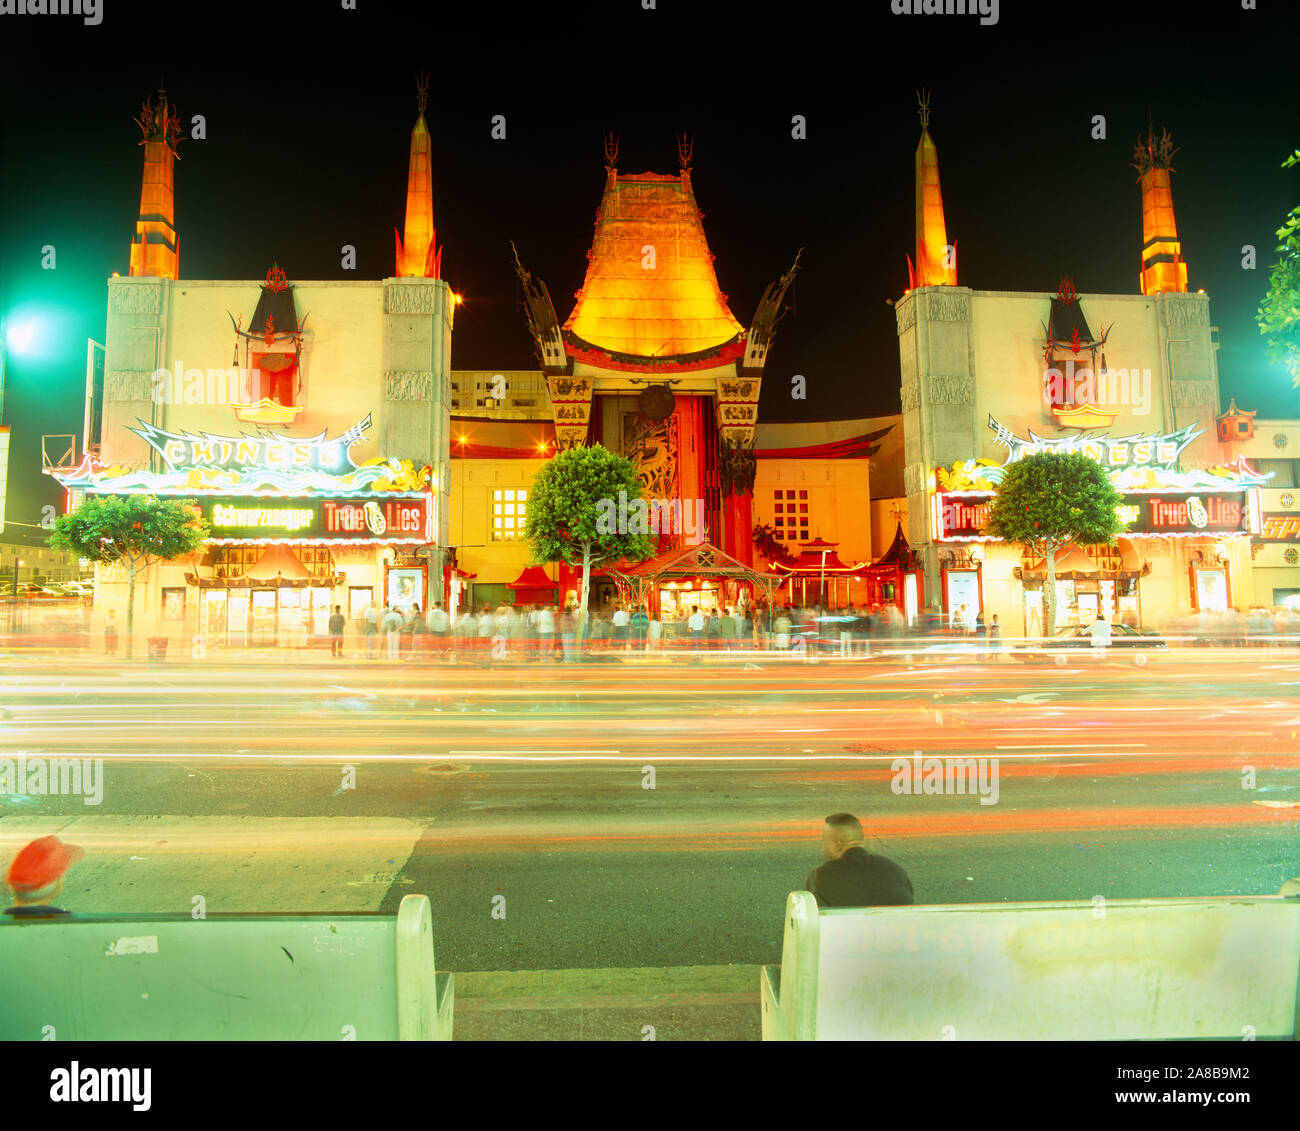 Façade d'un théâtre, le Grauman's Chinese Theatre, Sunset Boulevard, ville de Los Angeles, Californie, USA Banque D'Images